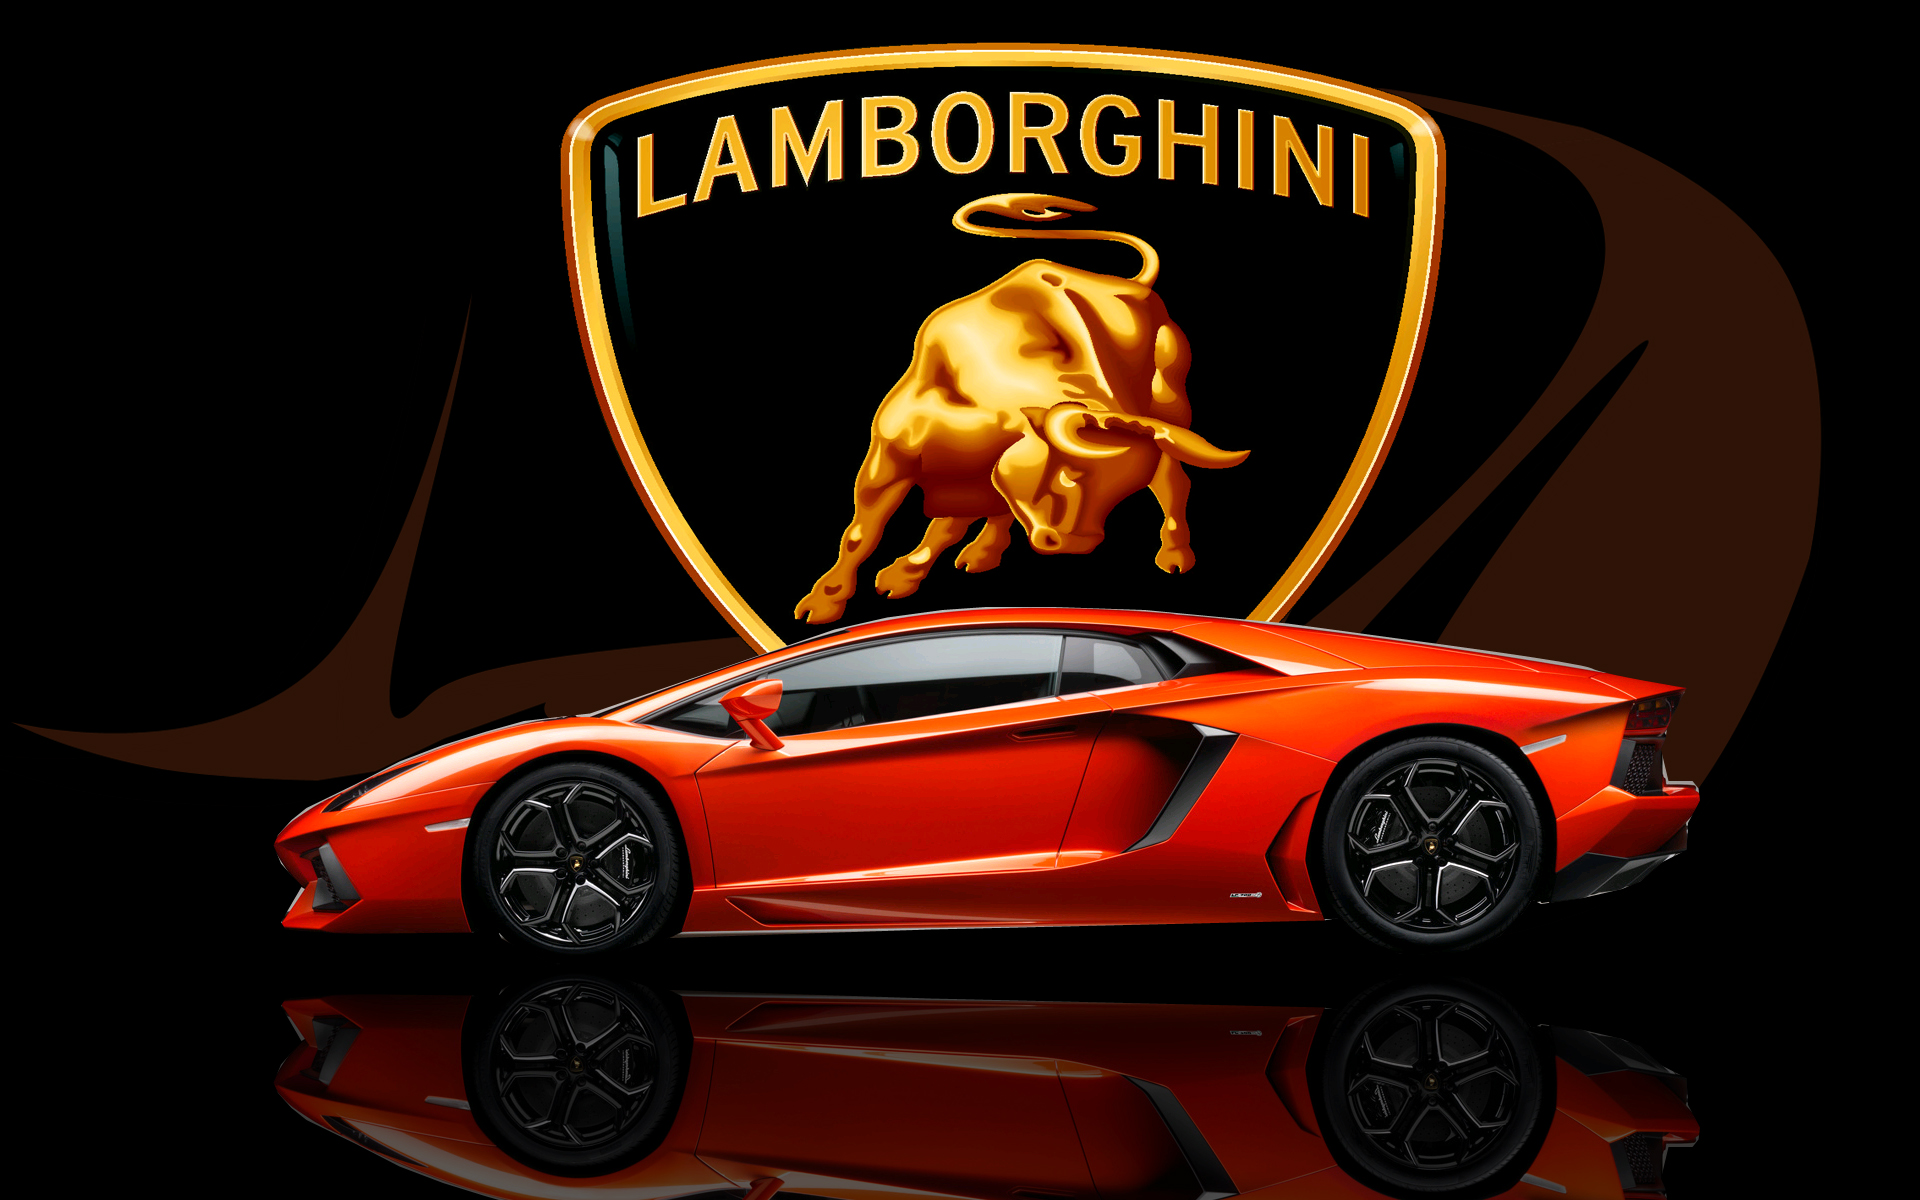 [Jeu] Suite d'images !  - Page 31 Lamborghini_logo_reflection_test_by_mwelb0rn-d5u7zs3